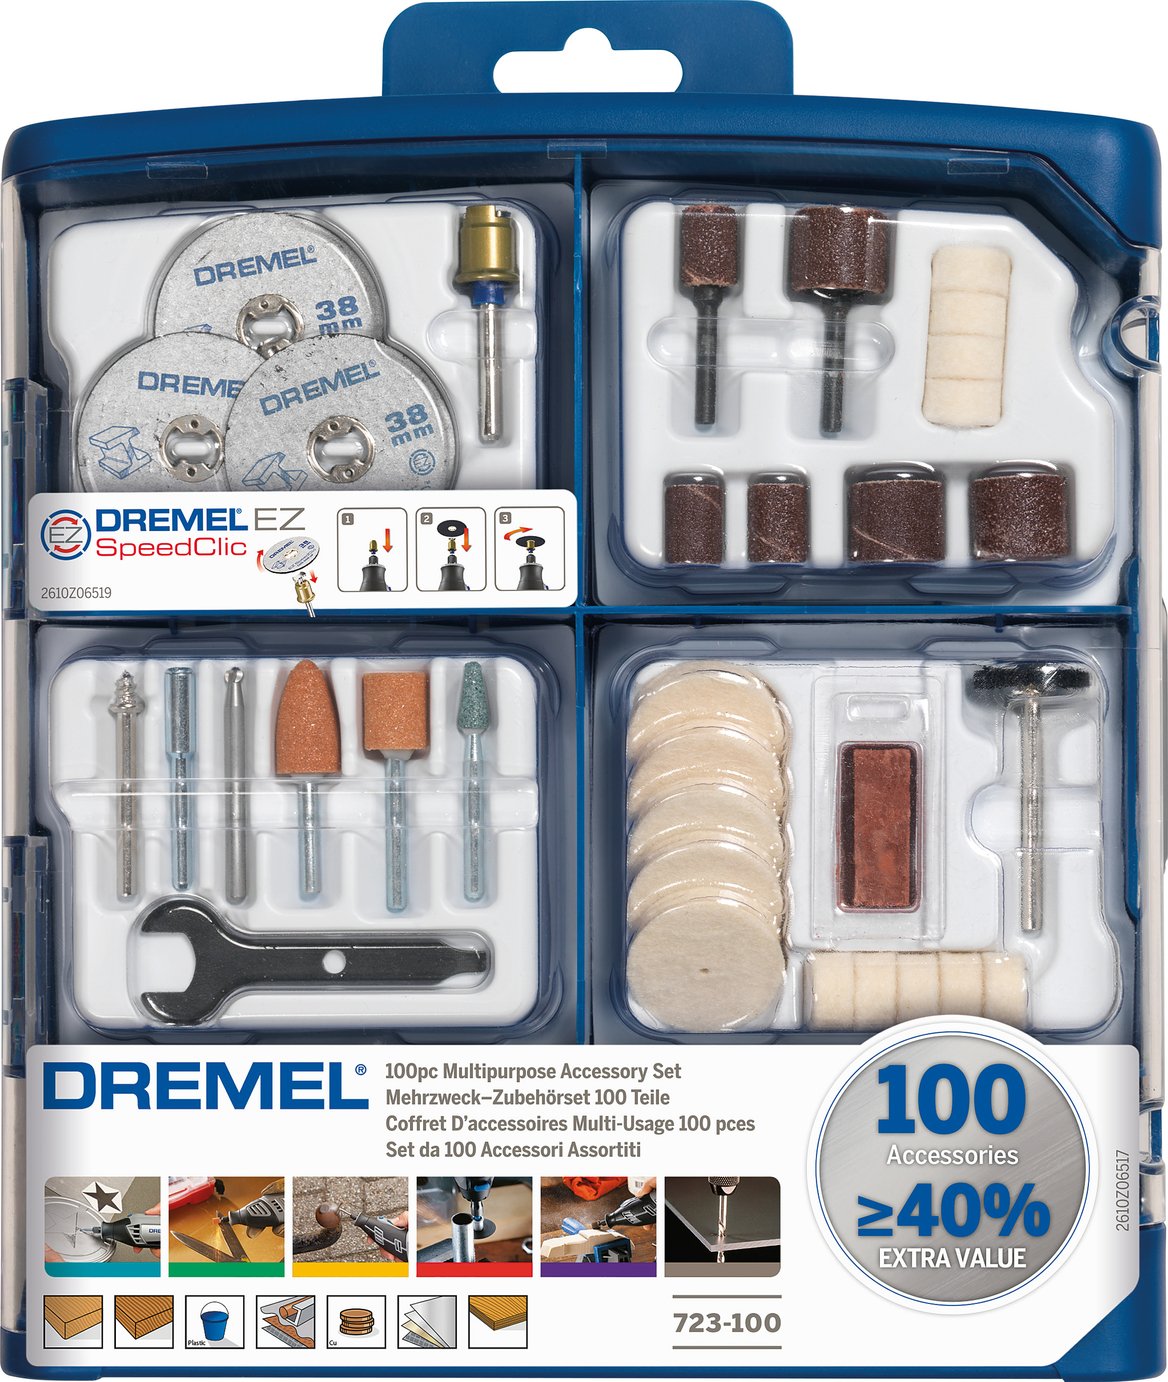 Dremel 100 Piece Accessory Set Review